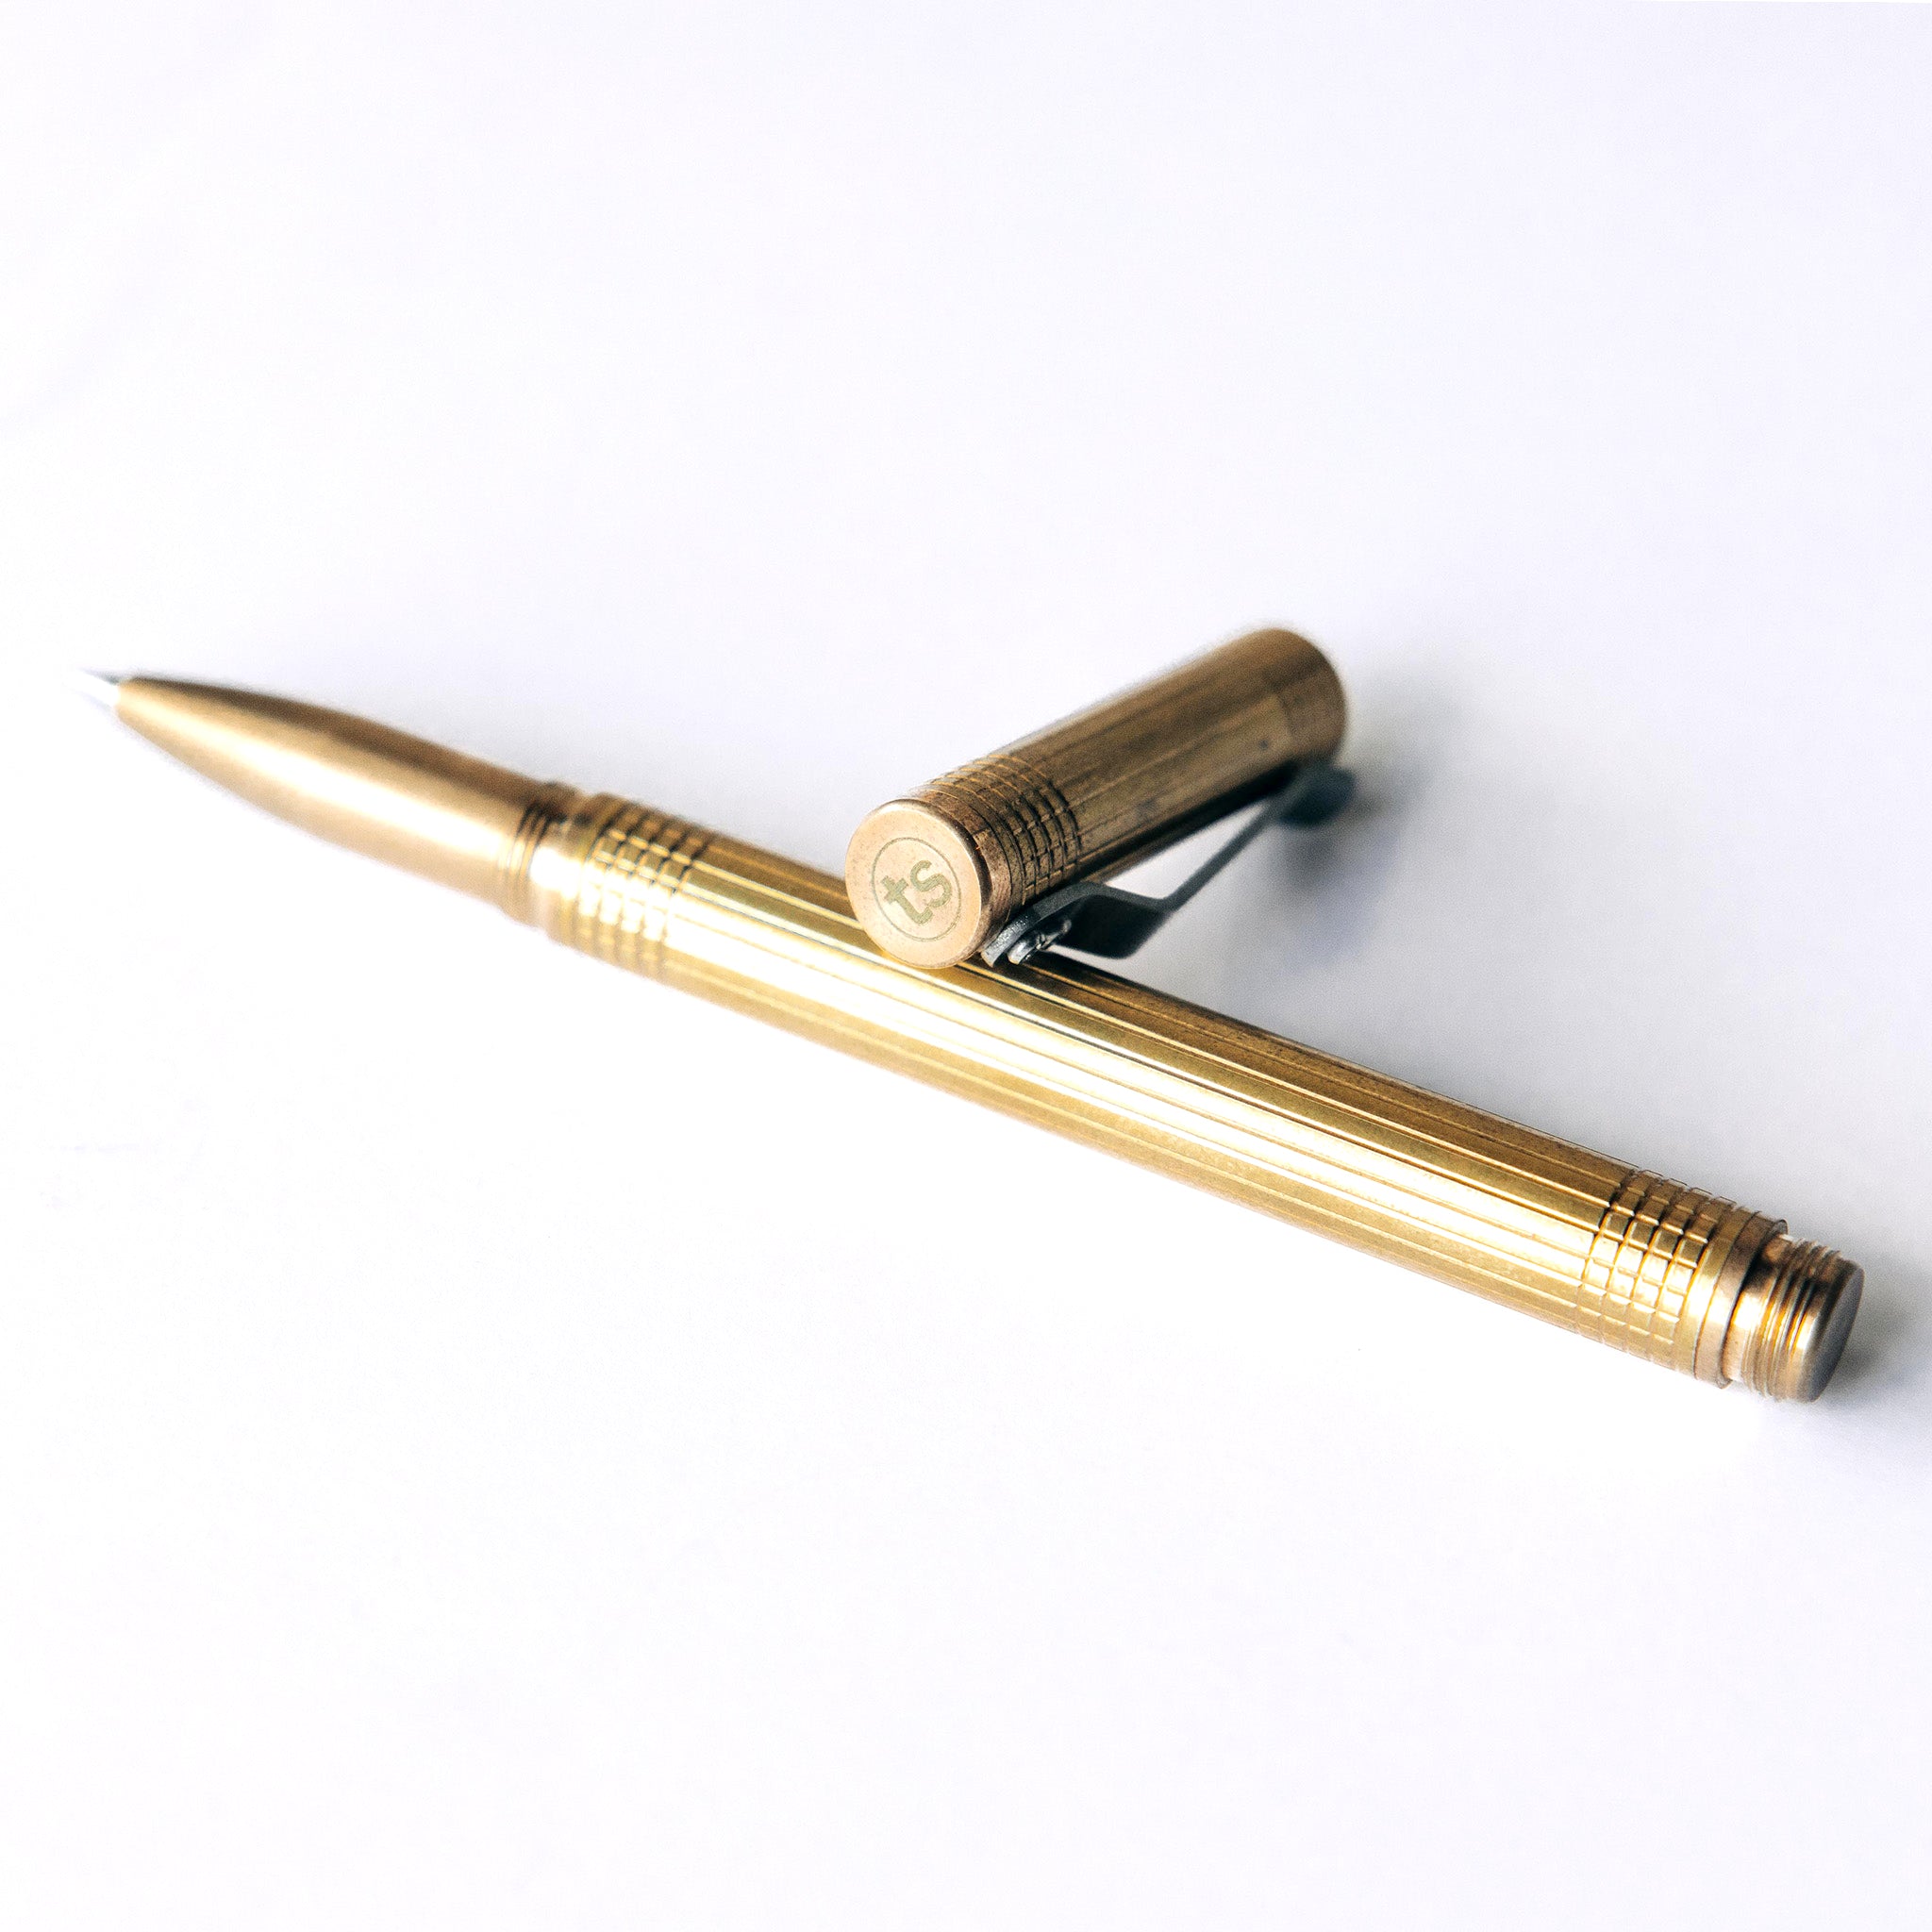 The Pen in Brass